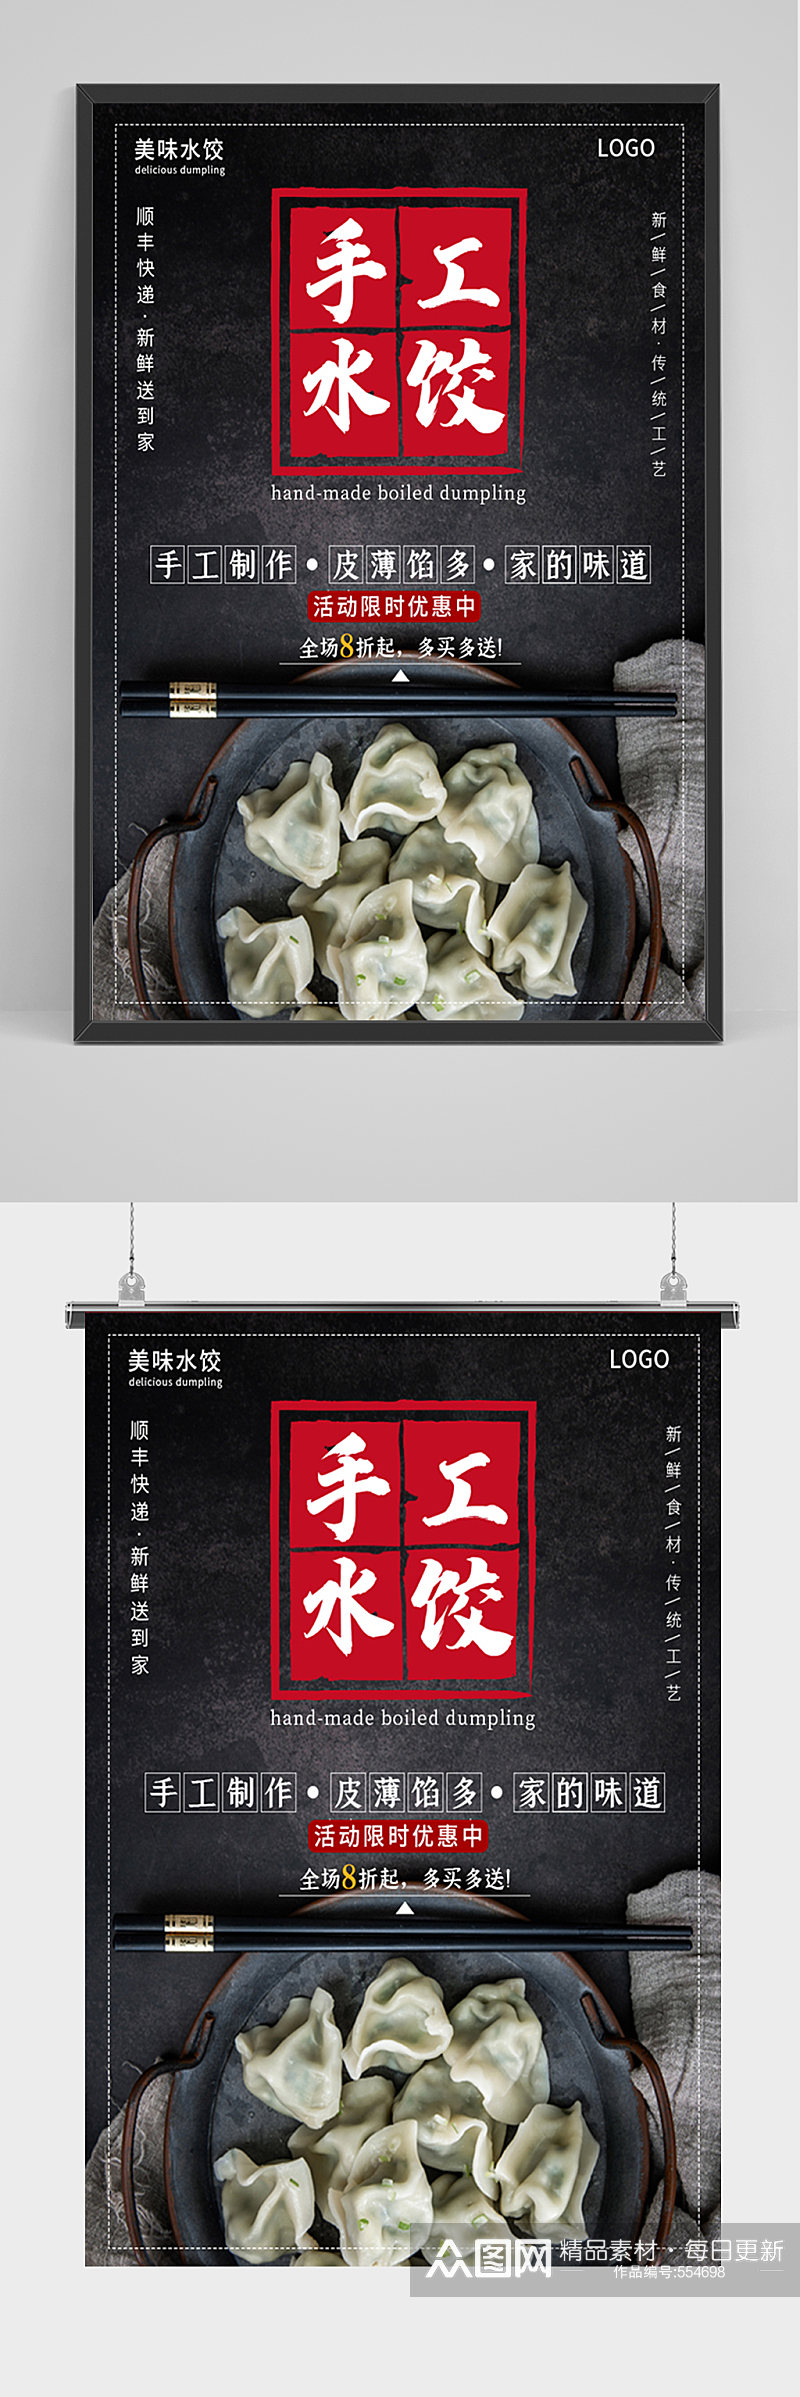 黑色大气手工水饺海报素材